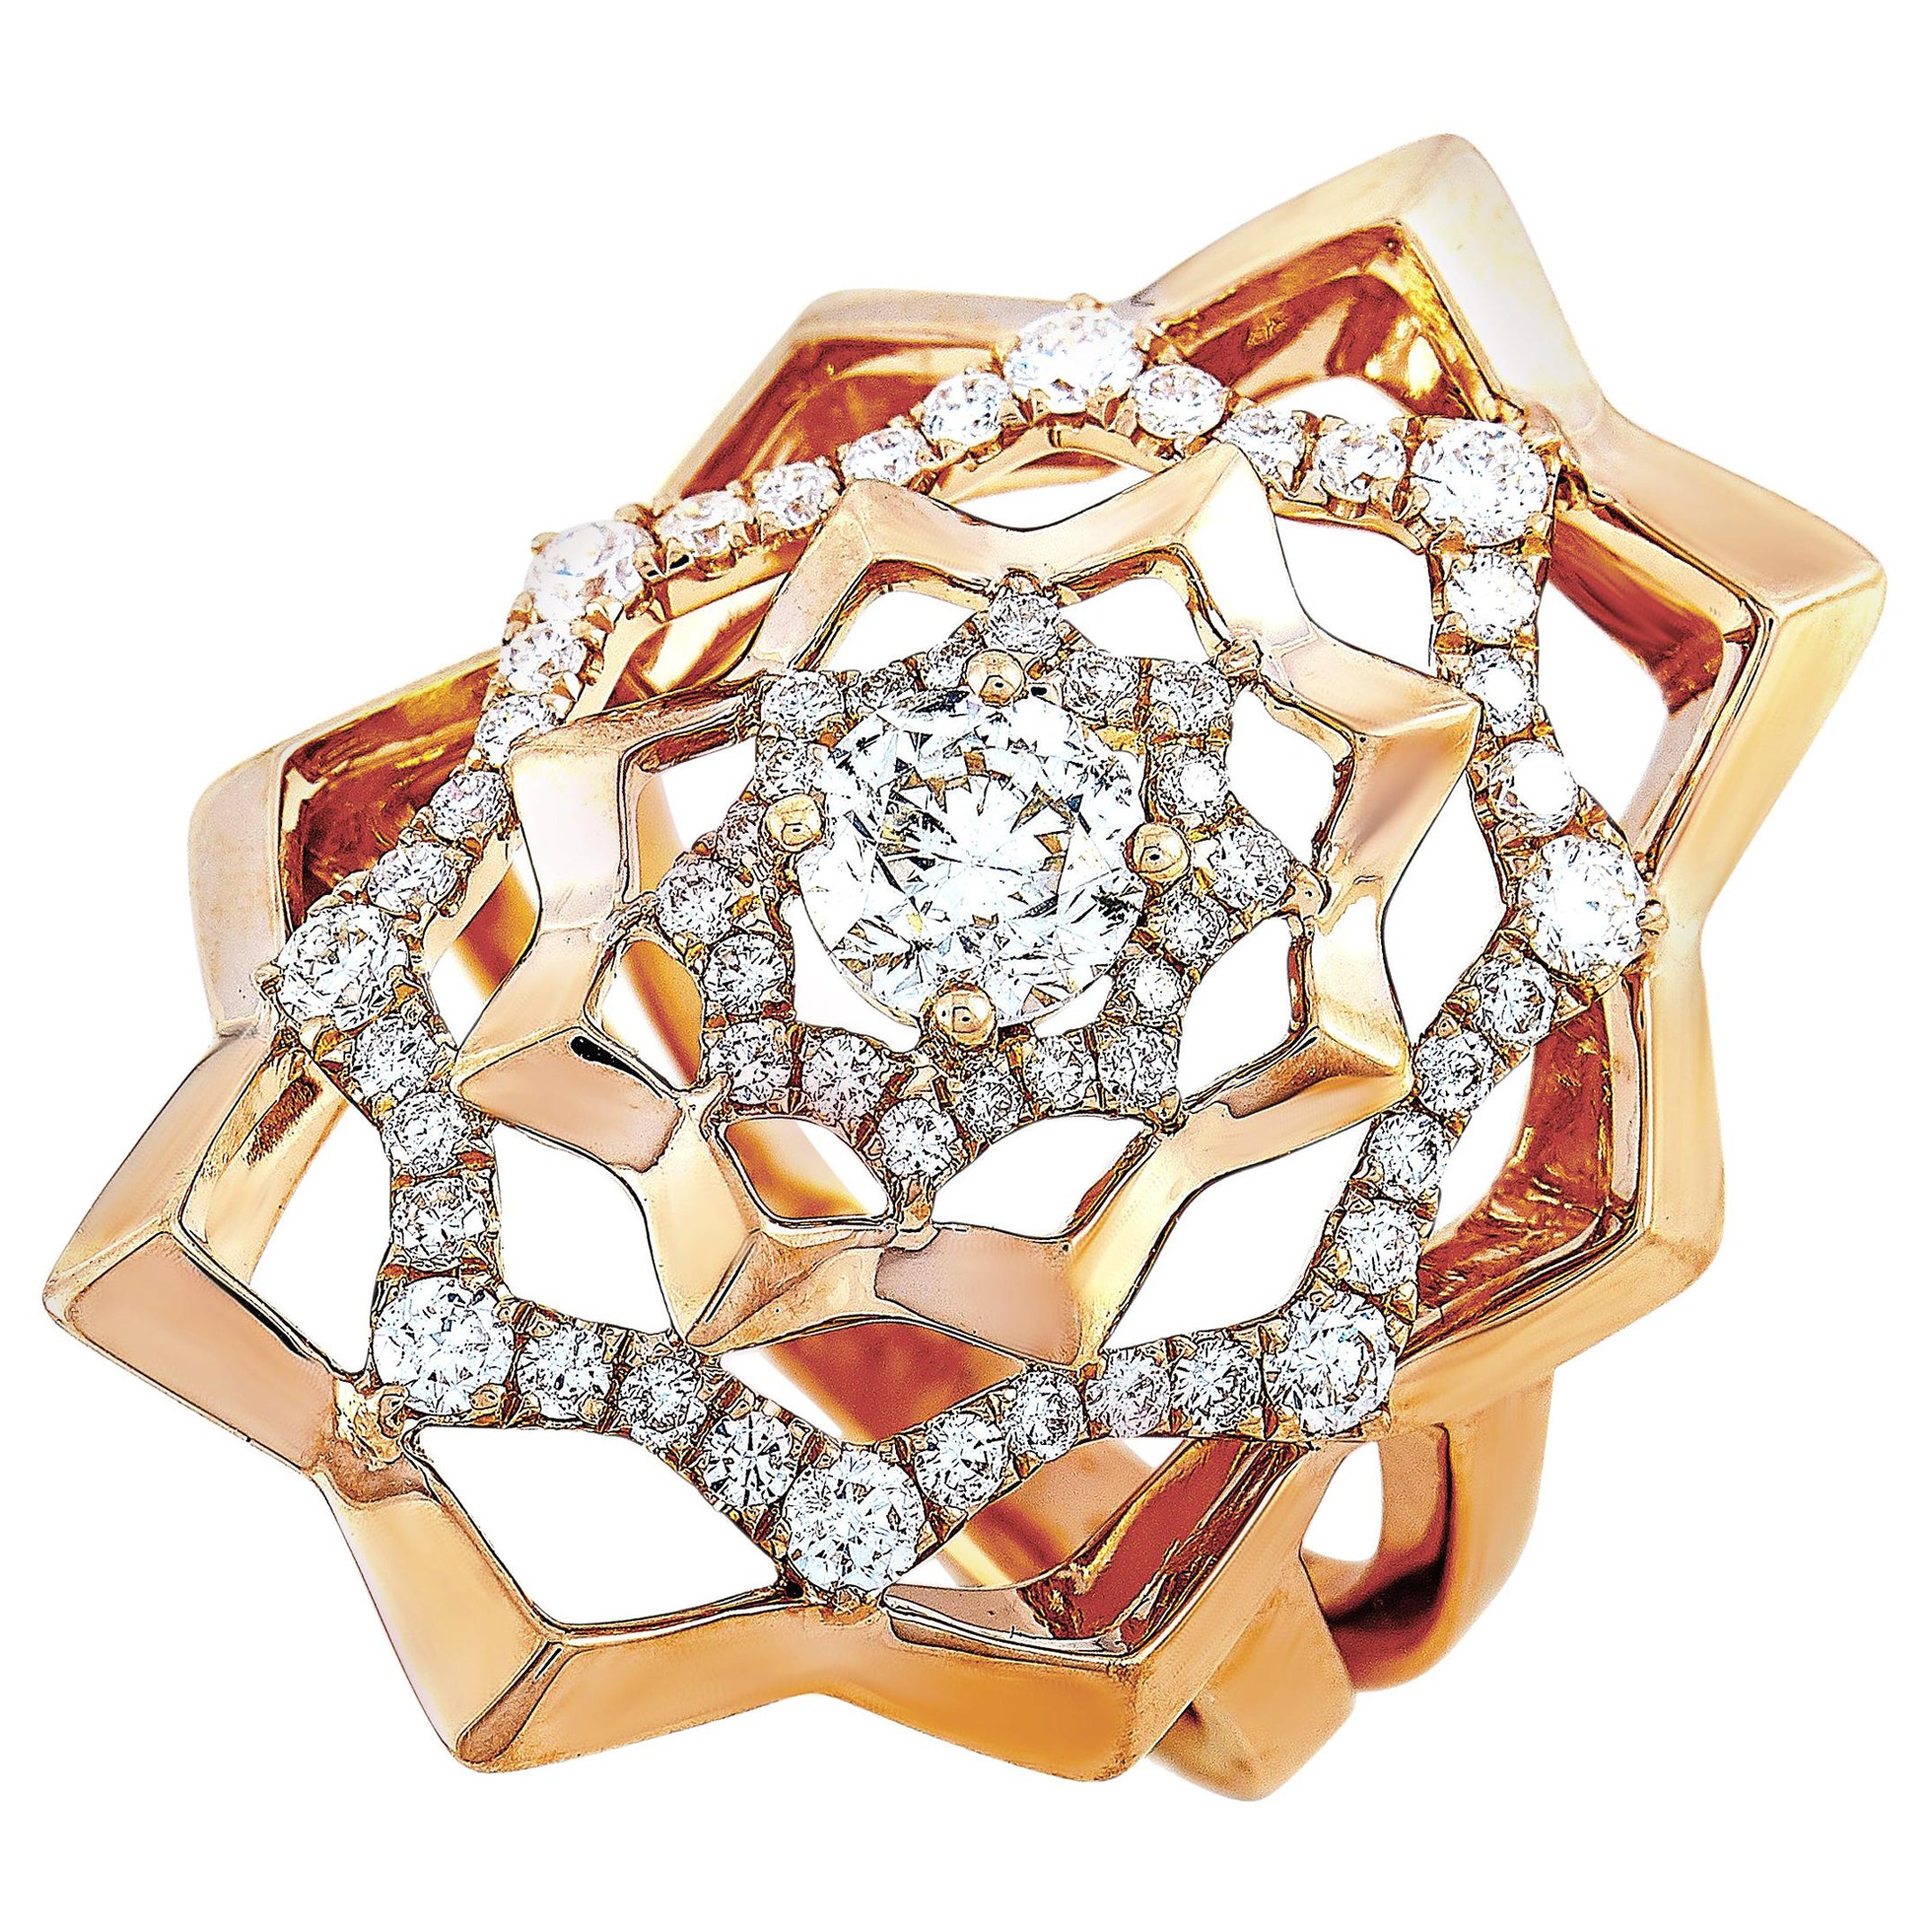 LB Exclusive 18 Karat Rose Gold 1.15 Carat Diamond Ring For Sale